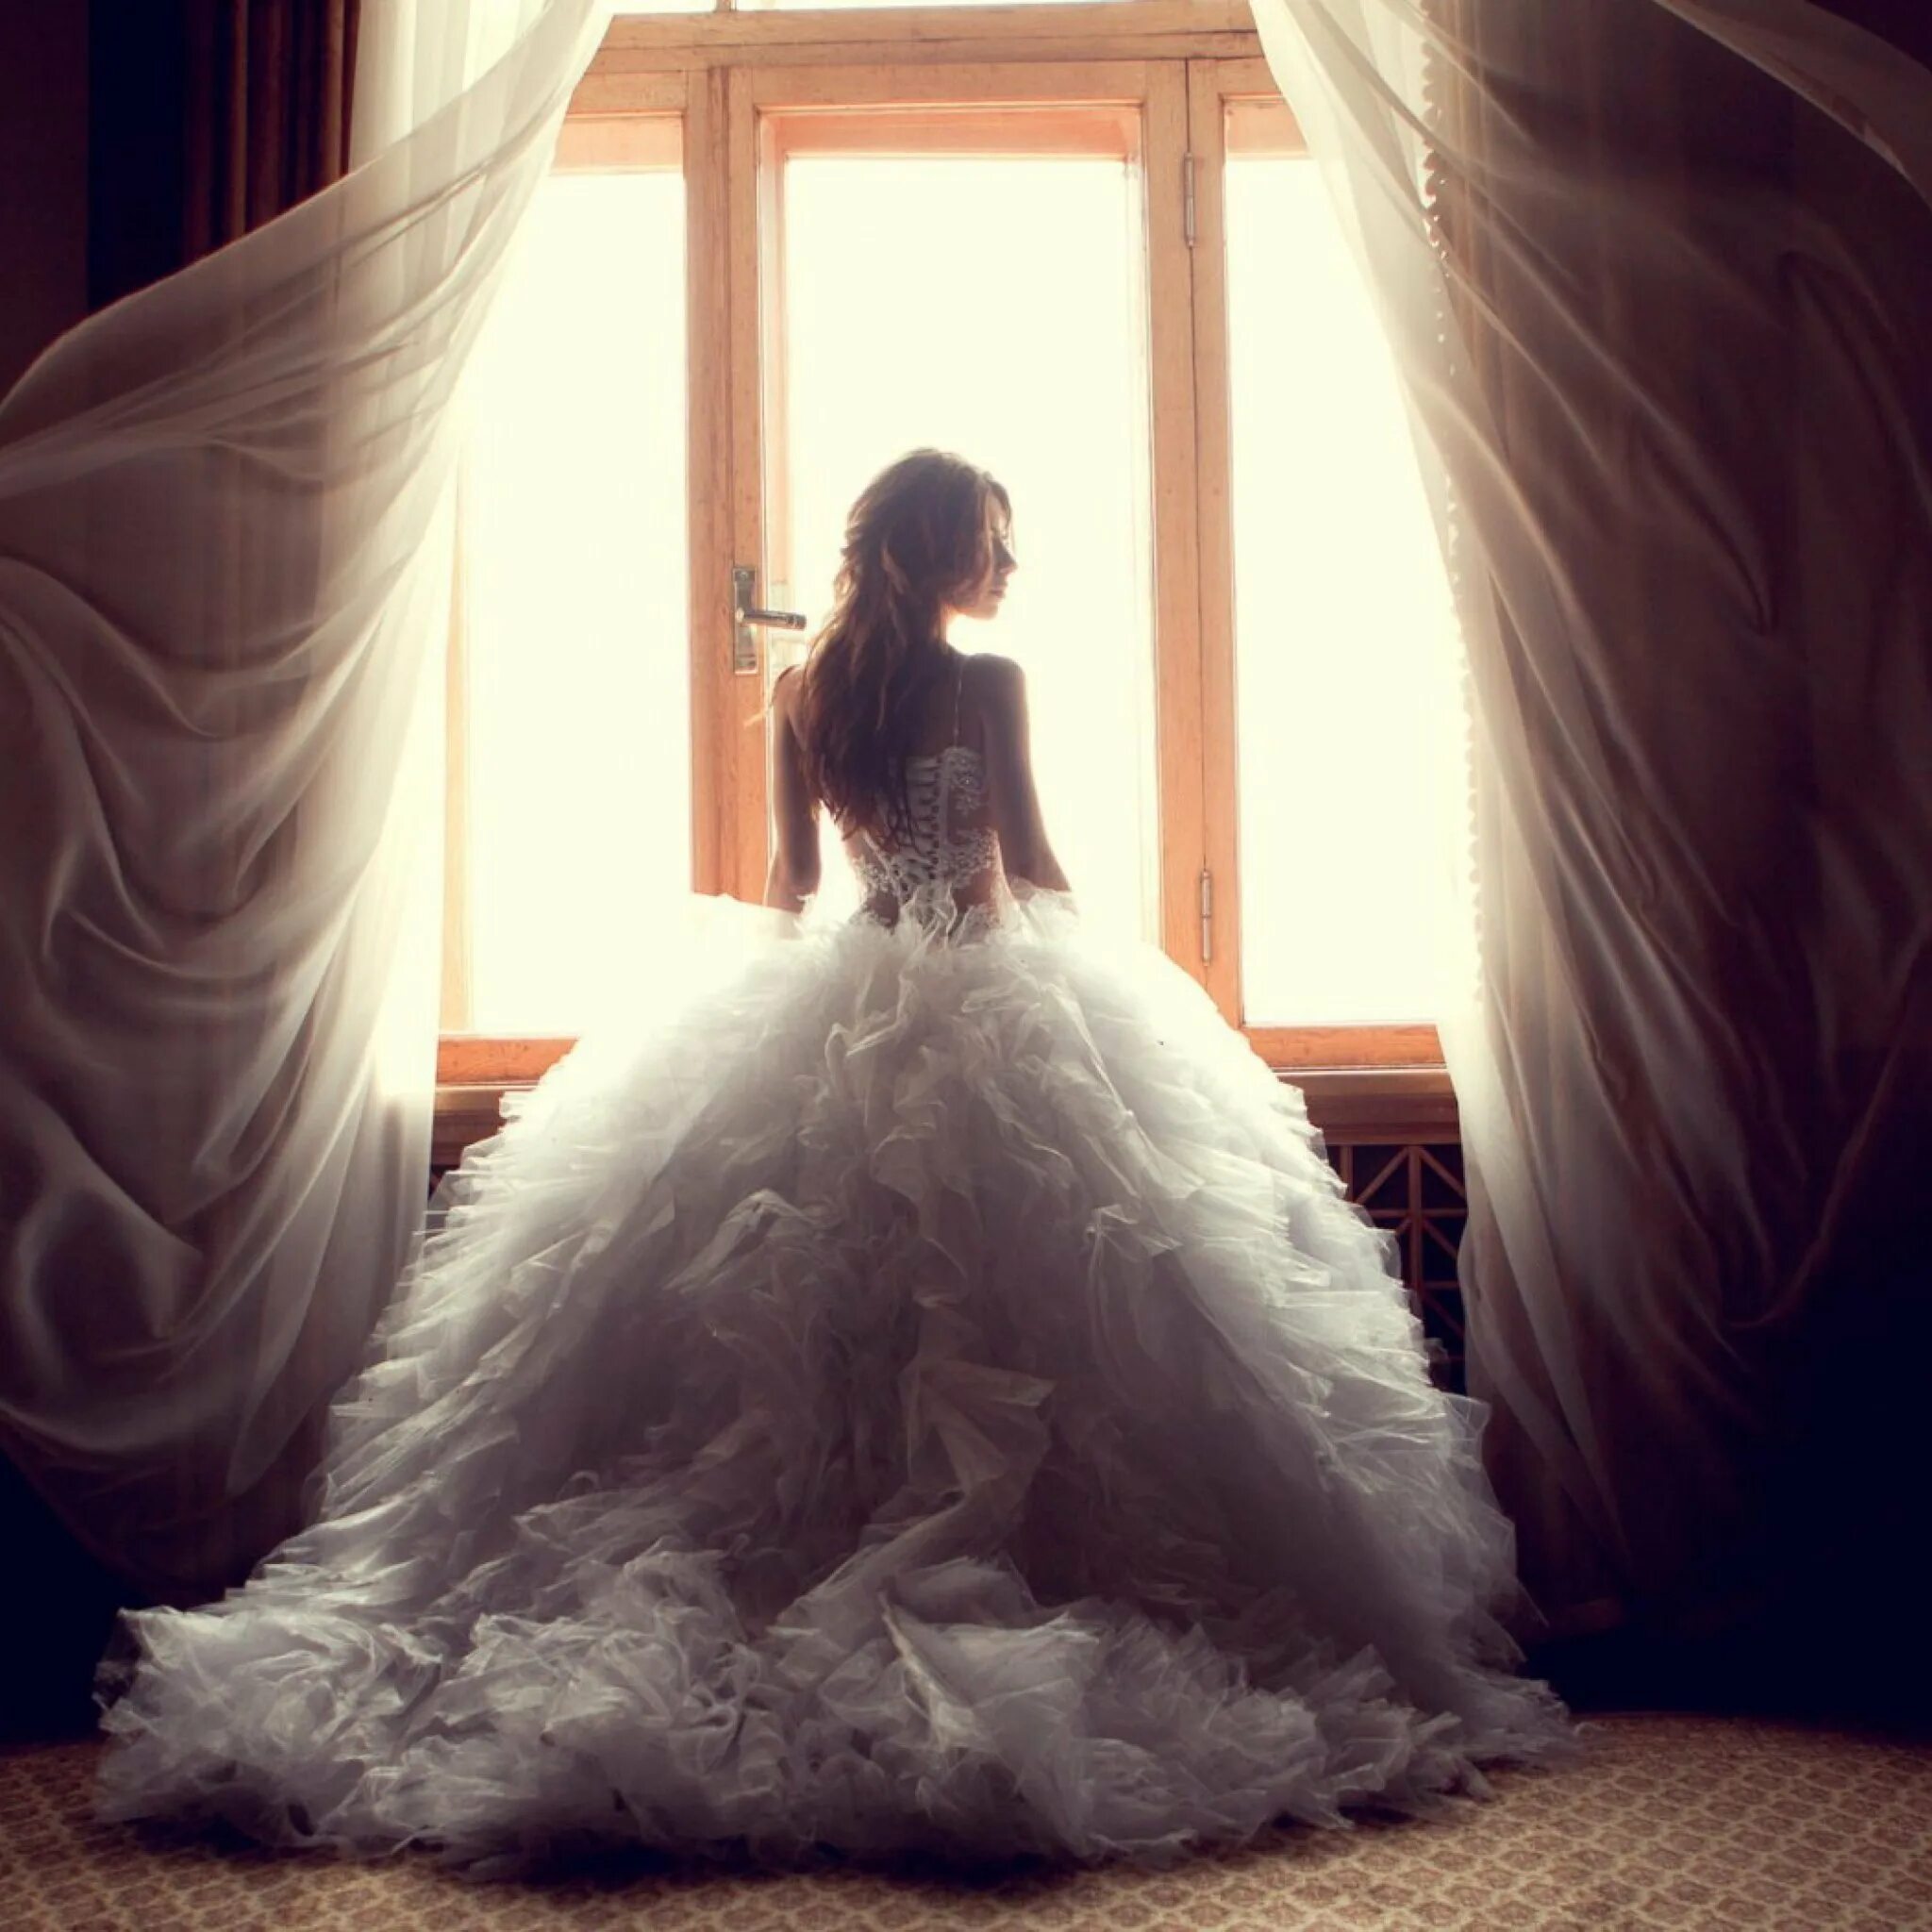 Стала твоей невестой. Девушка в свадебном платье. Девушка в свадебном платье со спины. Девушка в пашномплатье. Фотосессия в свадебном платье.